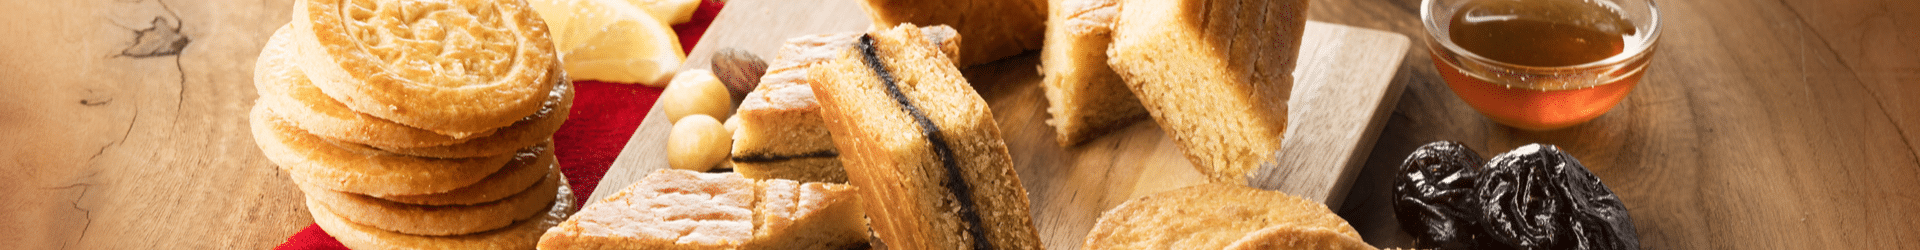 Gâteaux et biscuits bretons